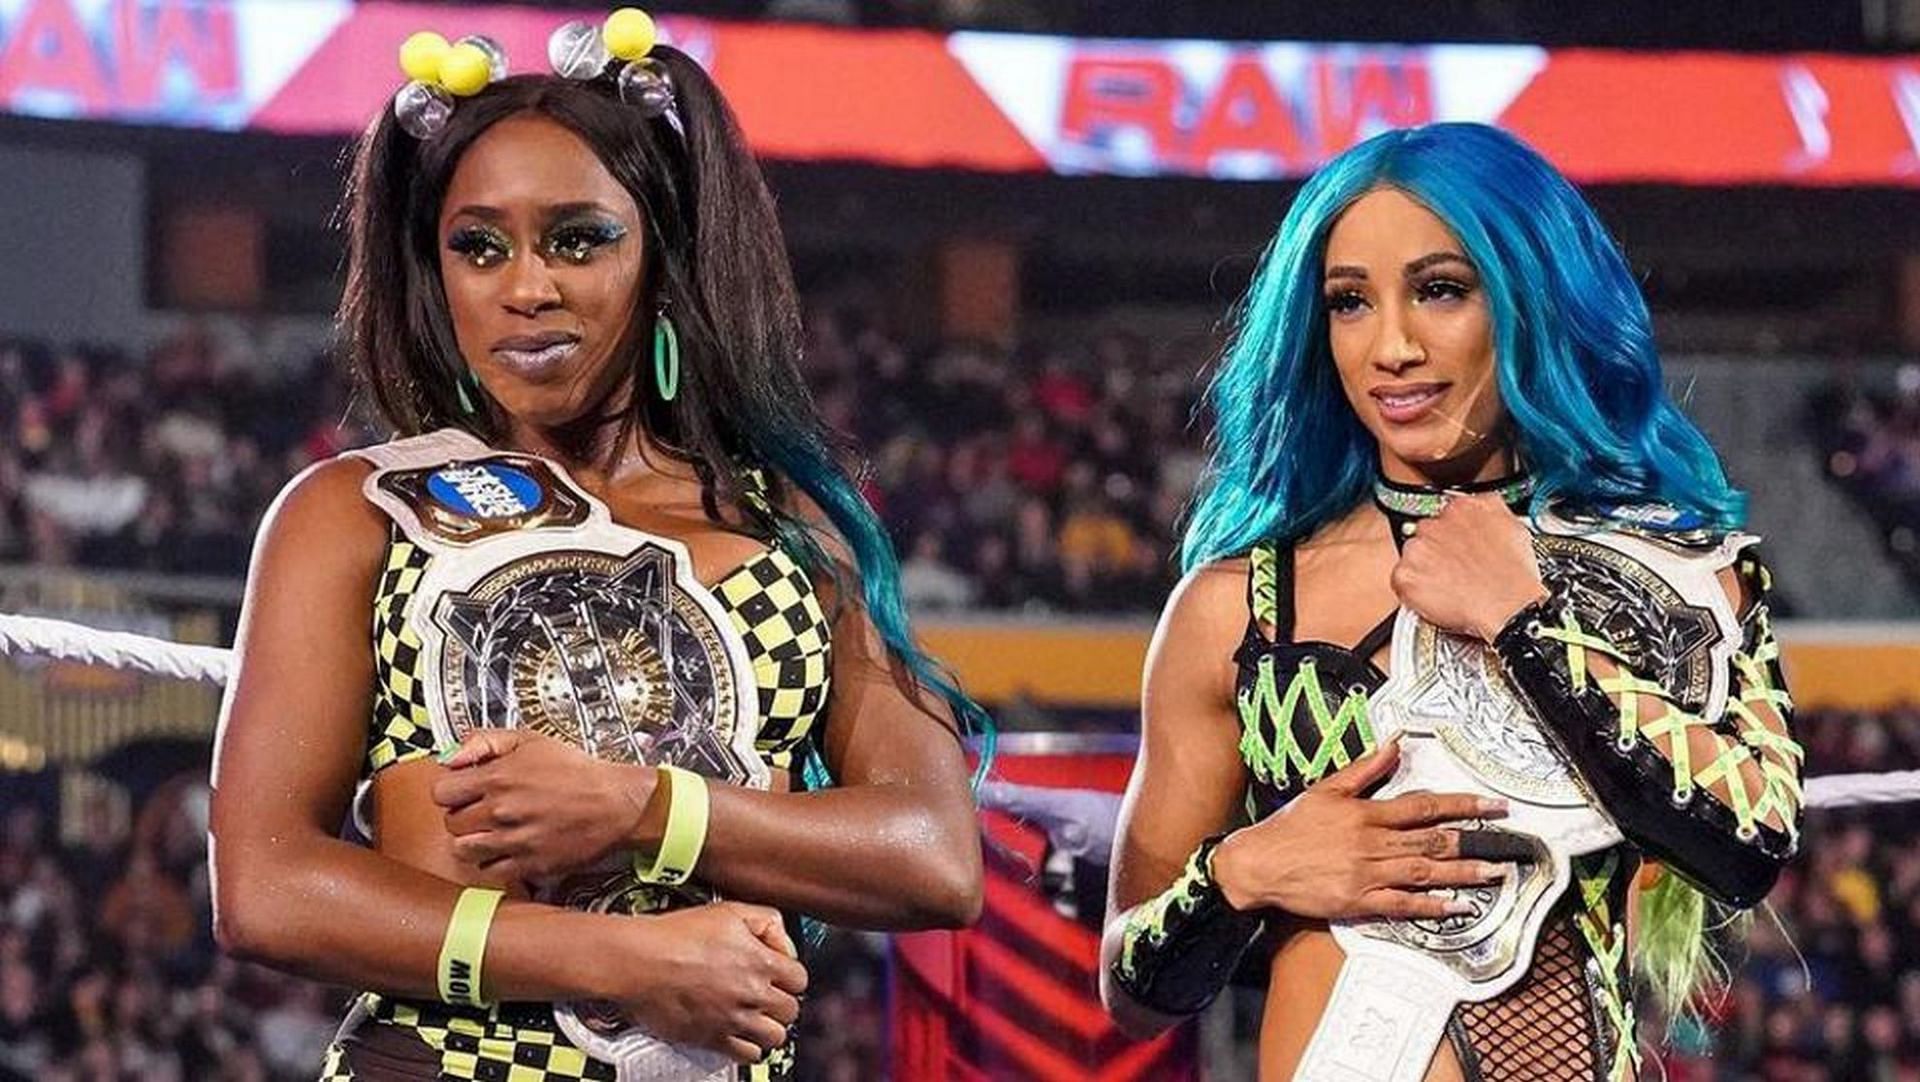 Banks and Naomi won the titles at WWE WrestleMania